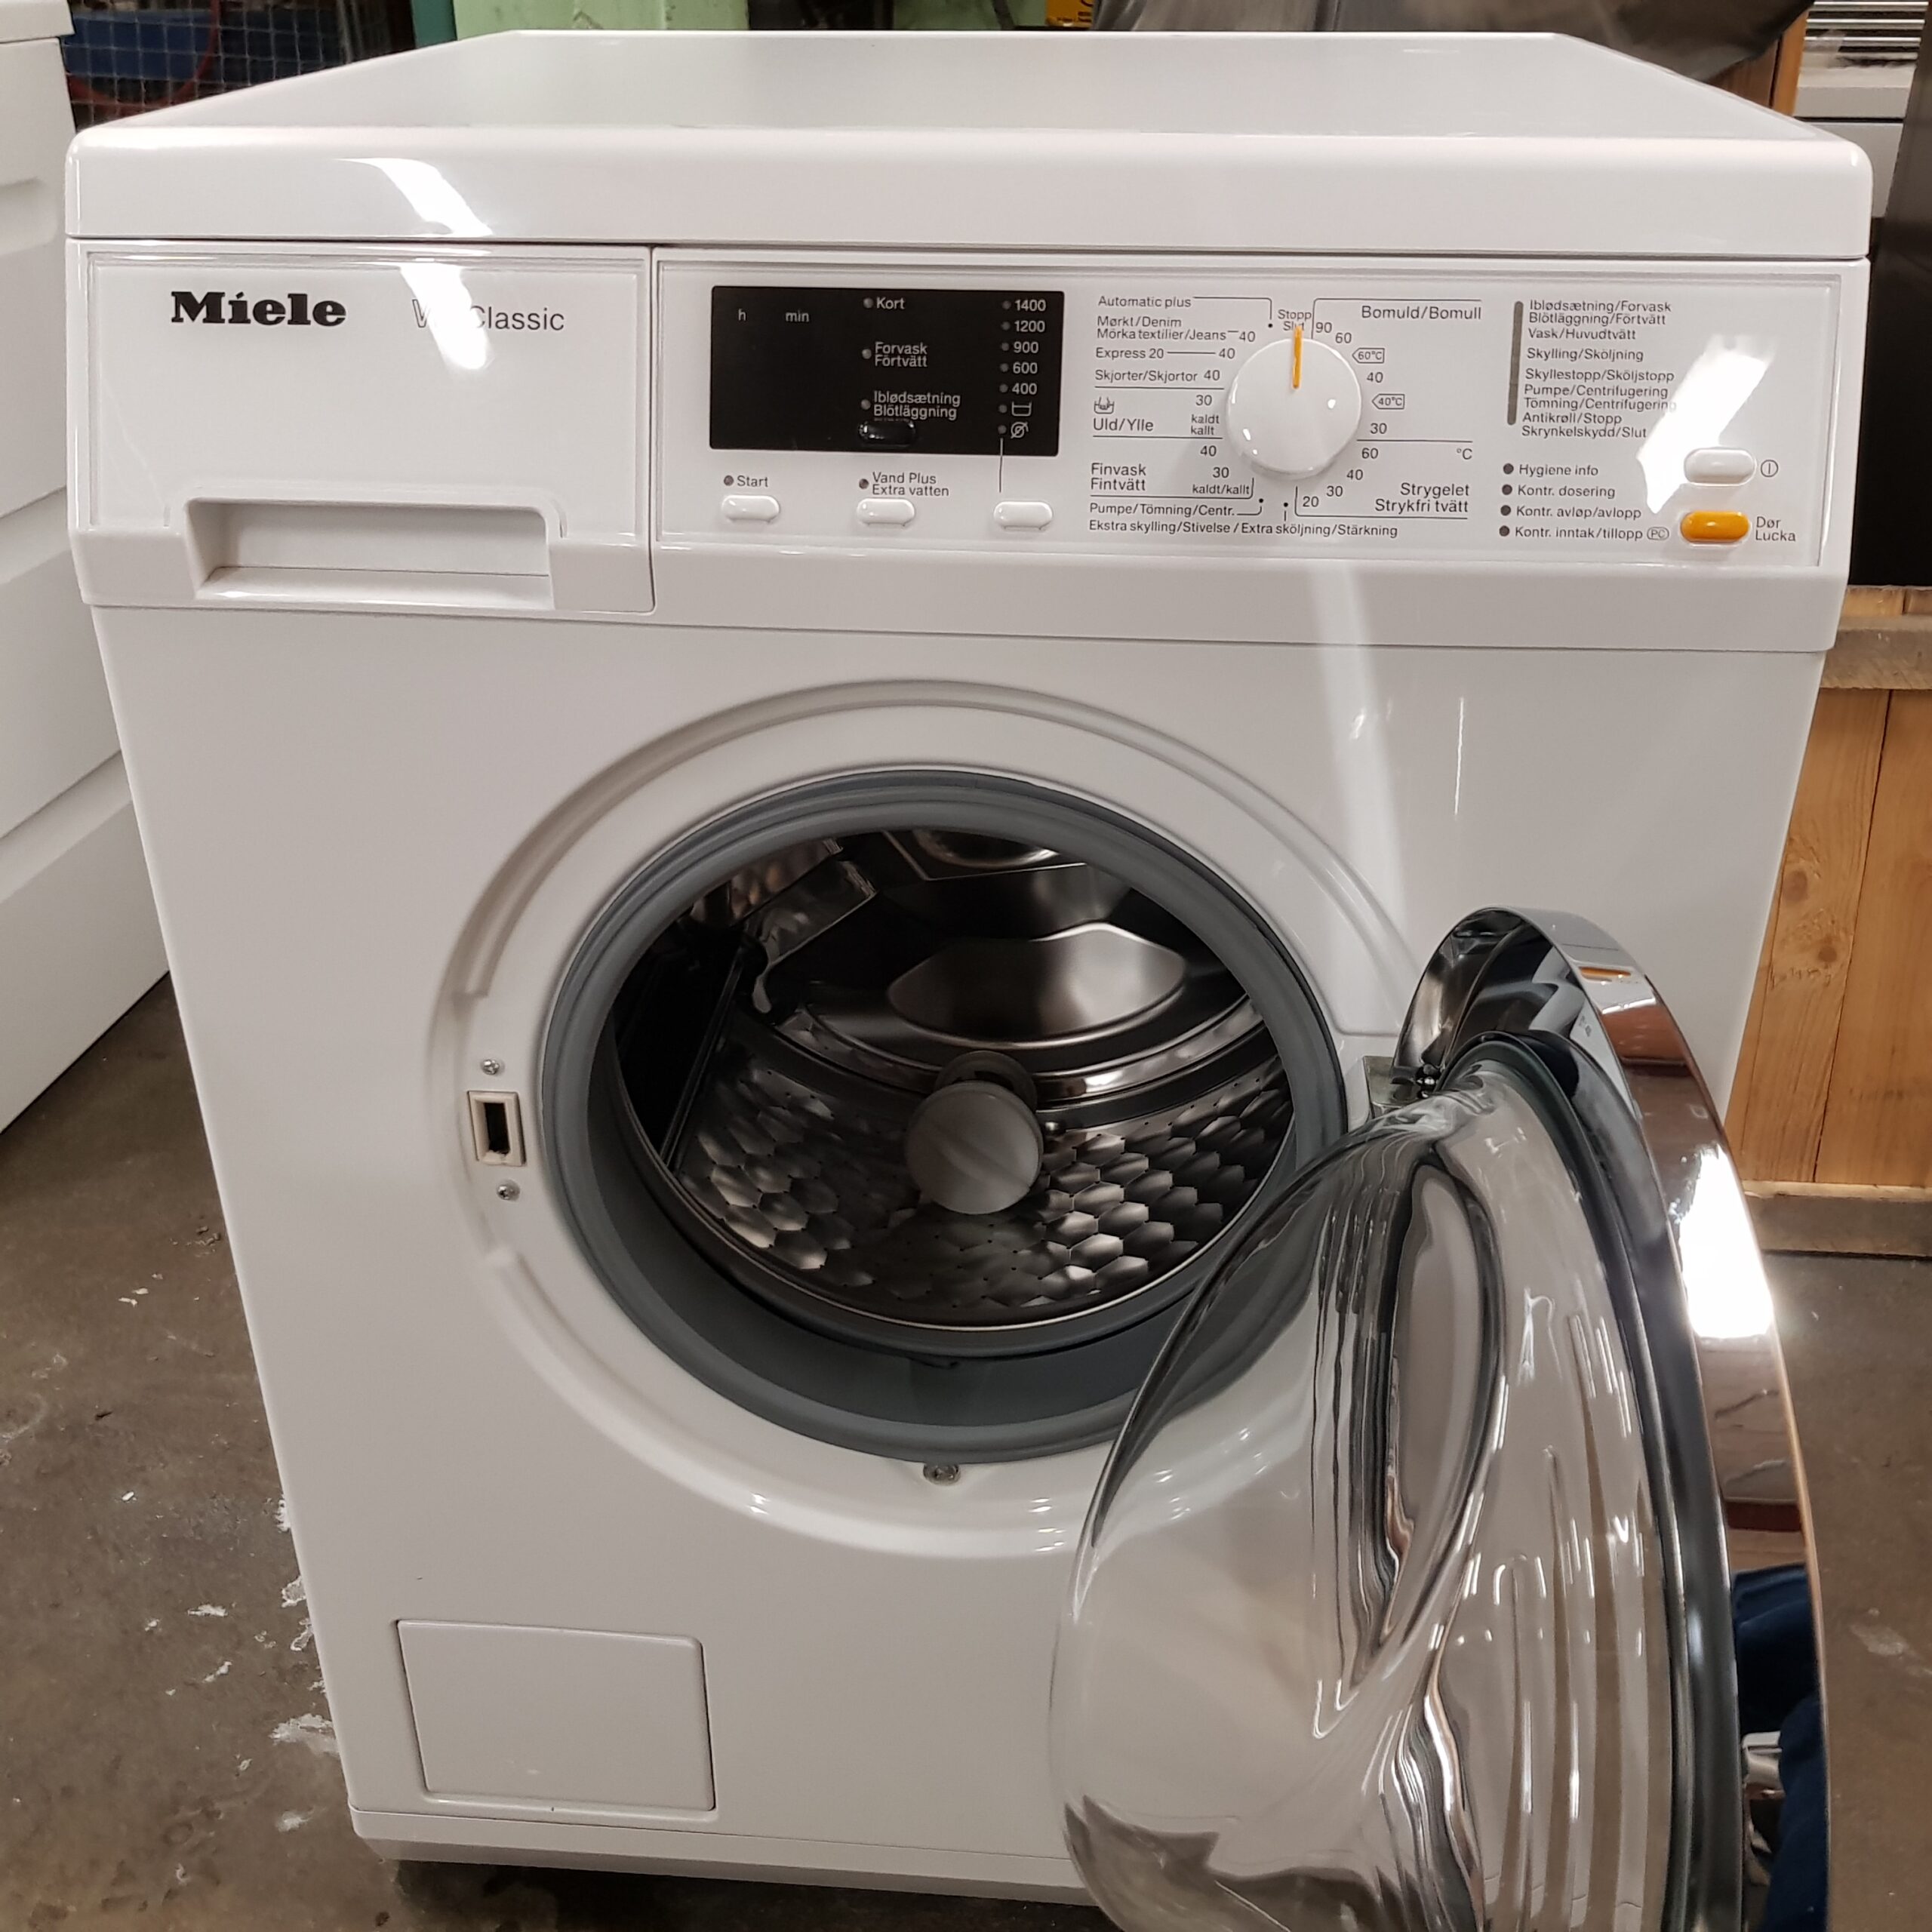 Så mange legering Bedst Miele vaskemaskine WDA115 *7kg *A++ *Lydniveau 54 dB *1400rpm -  baeredygtige maskinerDeGrønneHvidevarer ApS Gratis levering